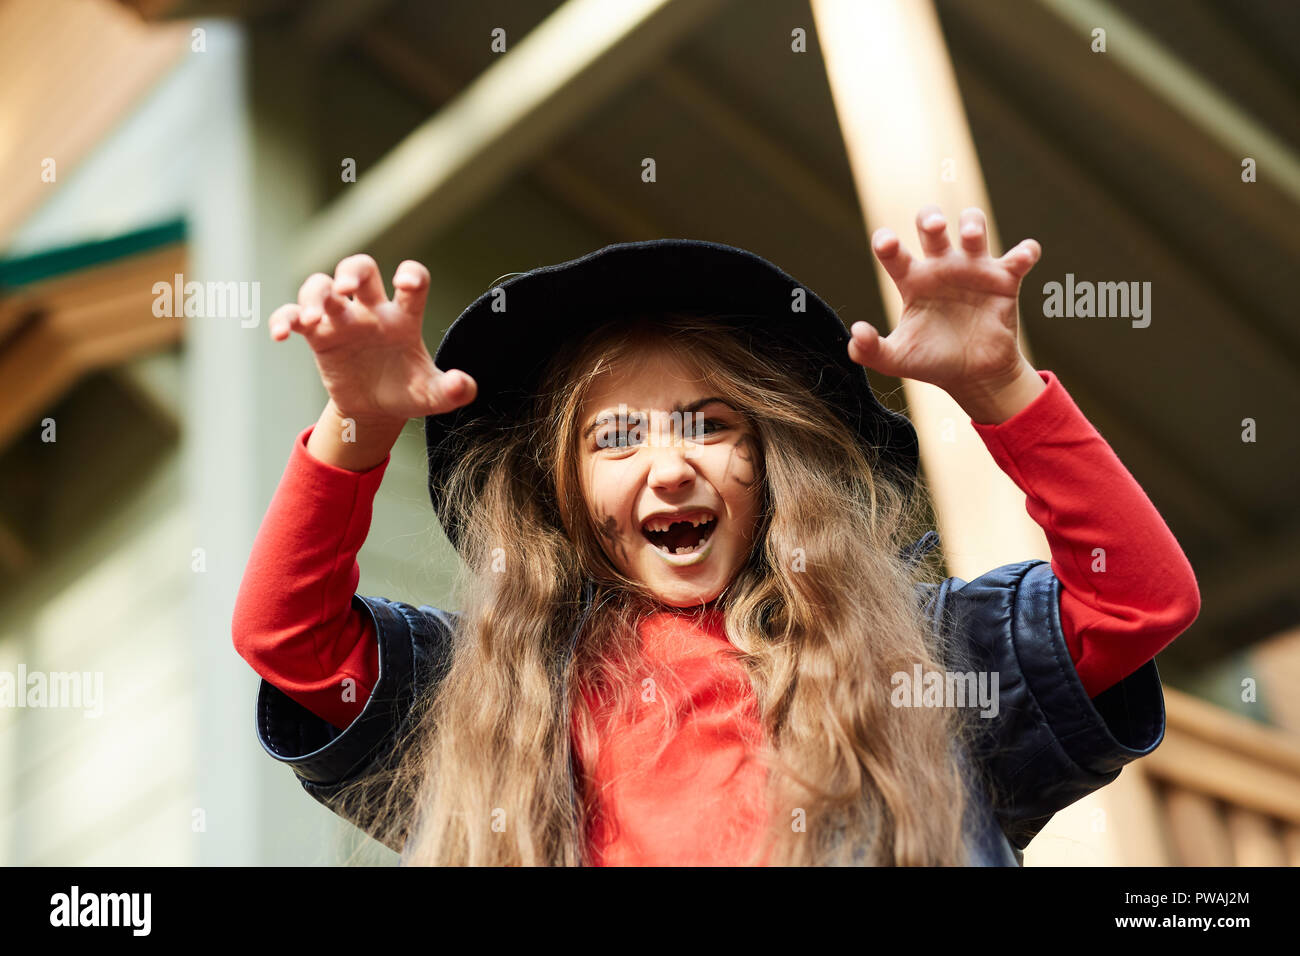 Unheimlich kleine Hexe in schwarzen Hut und Jacke und roten Pullover biegen ihre Finger, während sie erschreckend Gesichtsausdruck Stockfoto